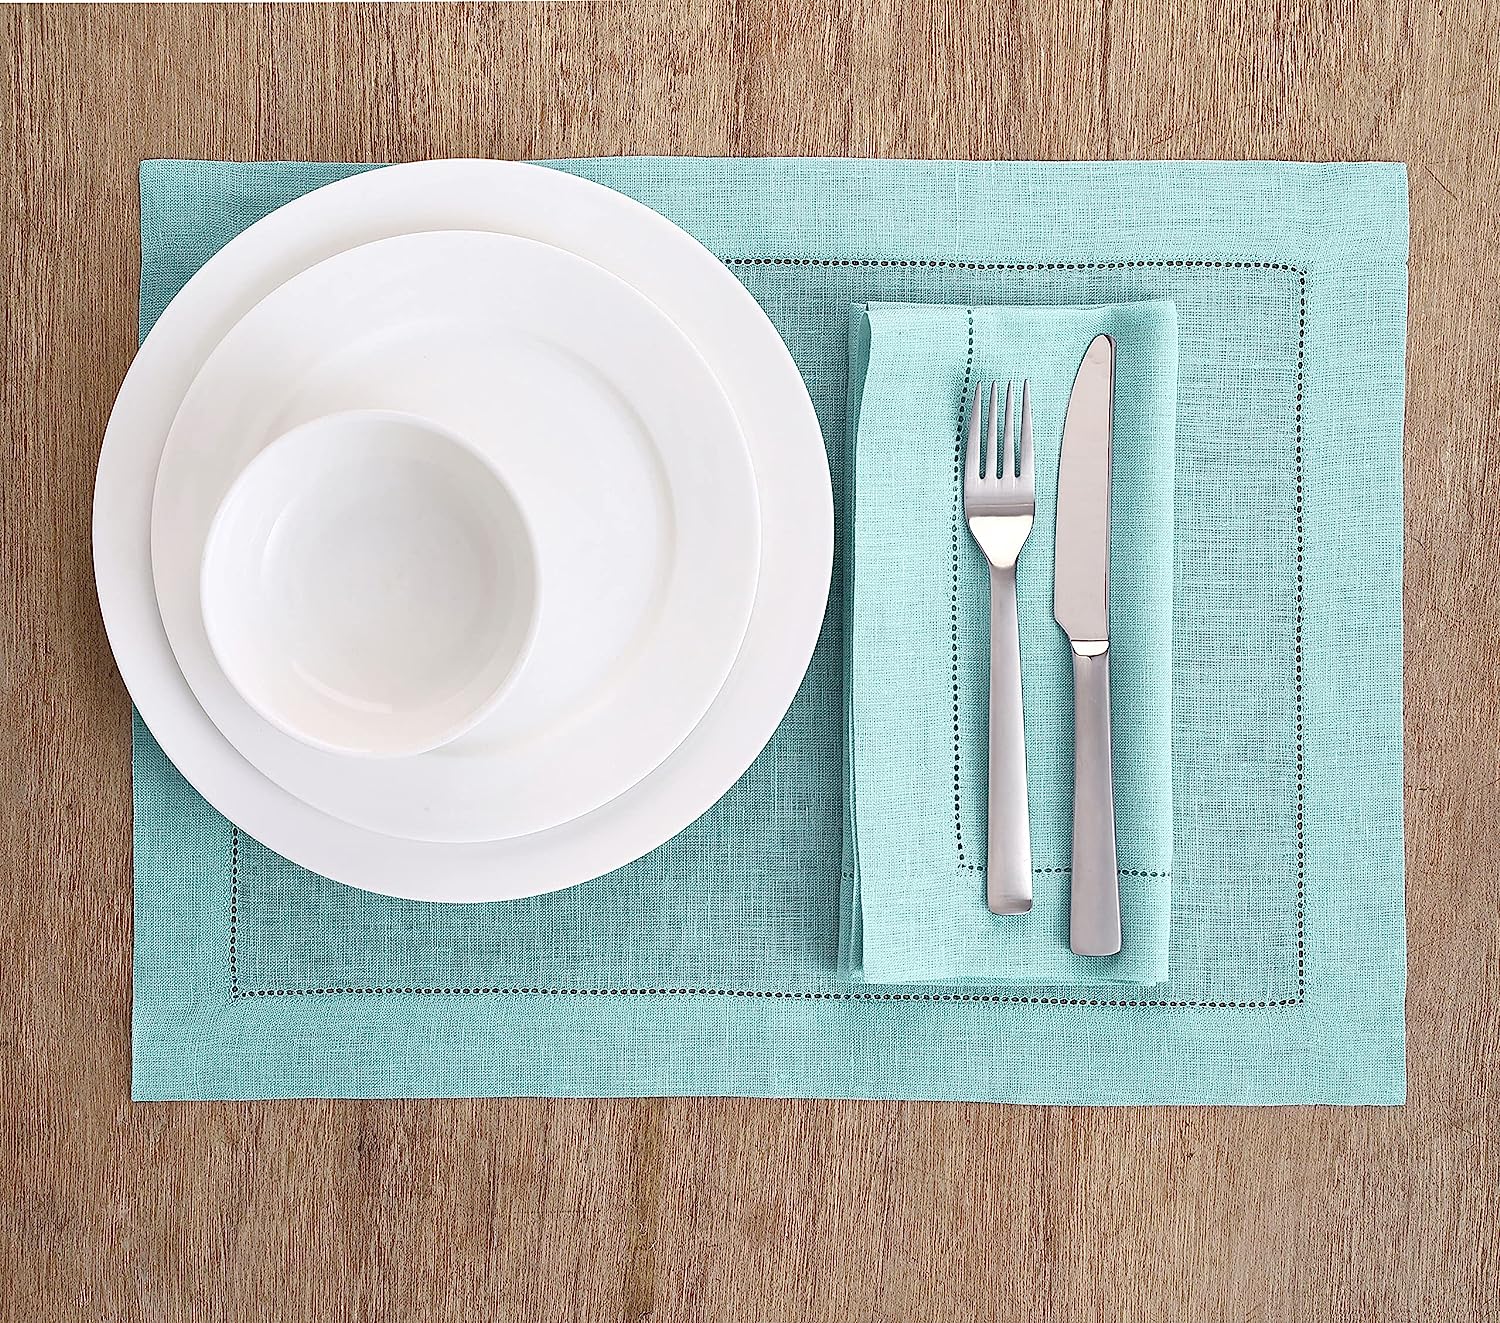 Hemstitched Table Linens (Aqua Blue Color)